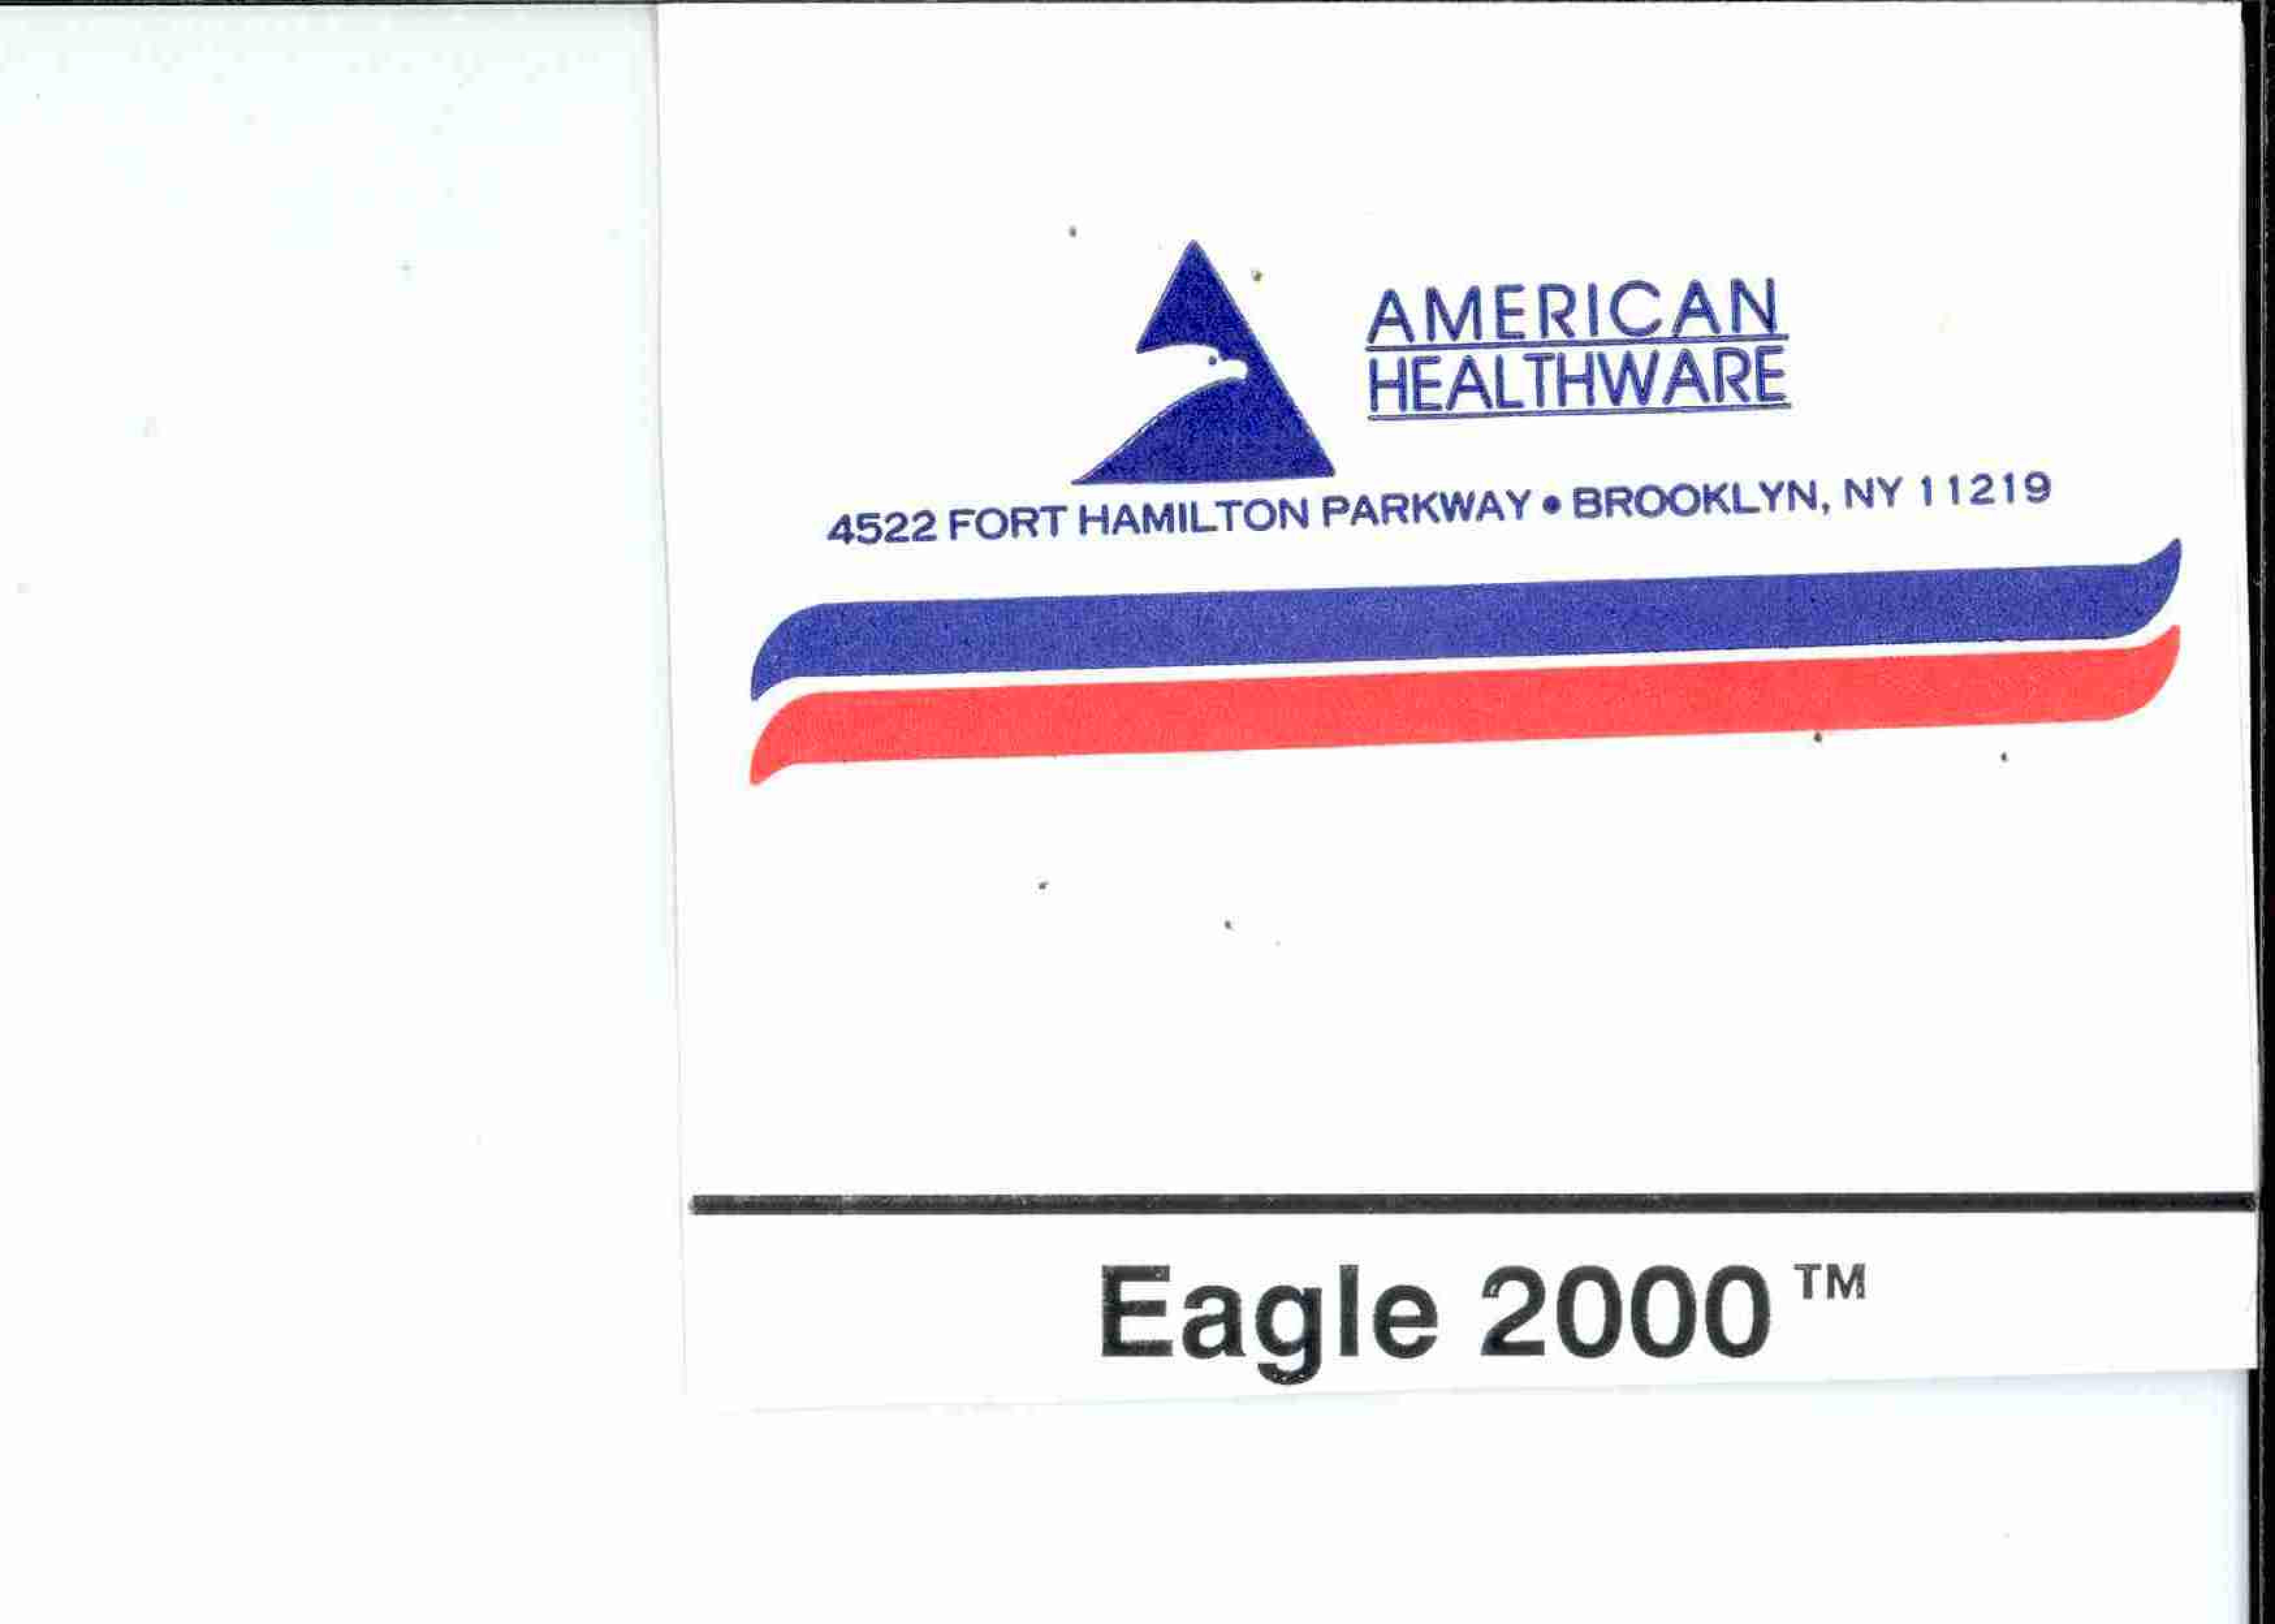  EAGLE 2000